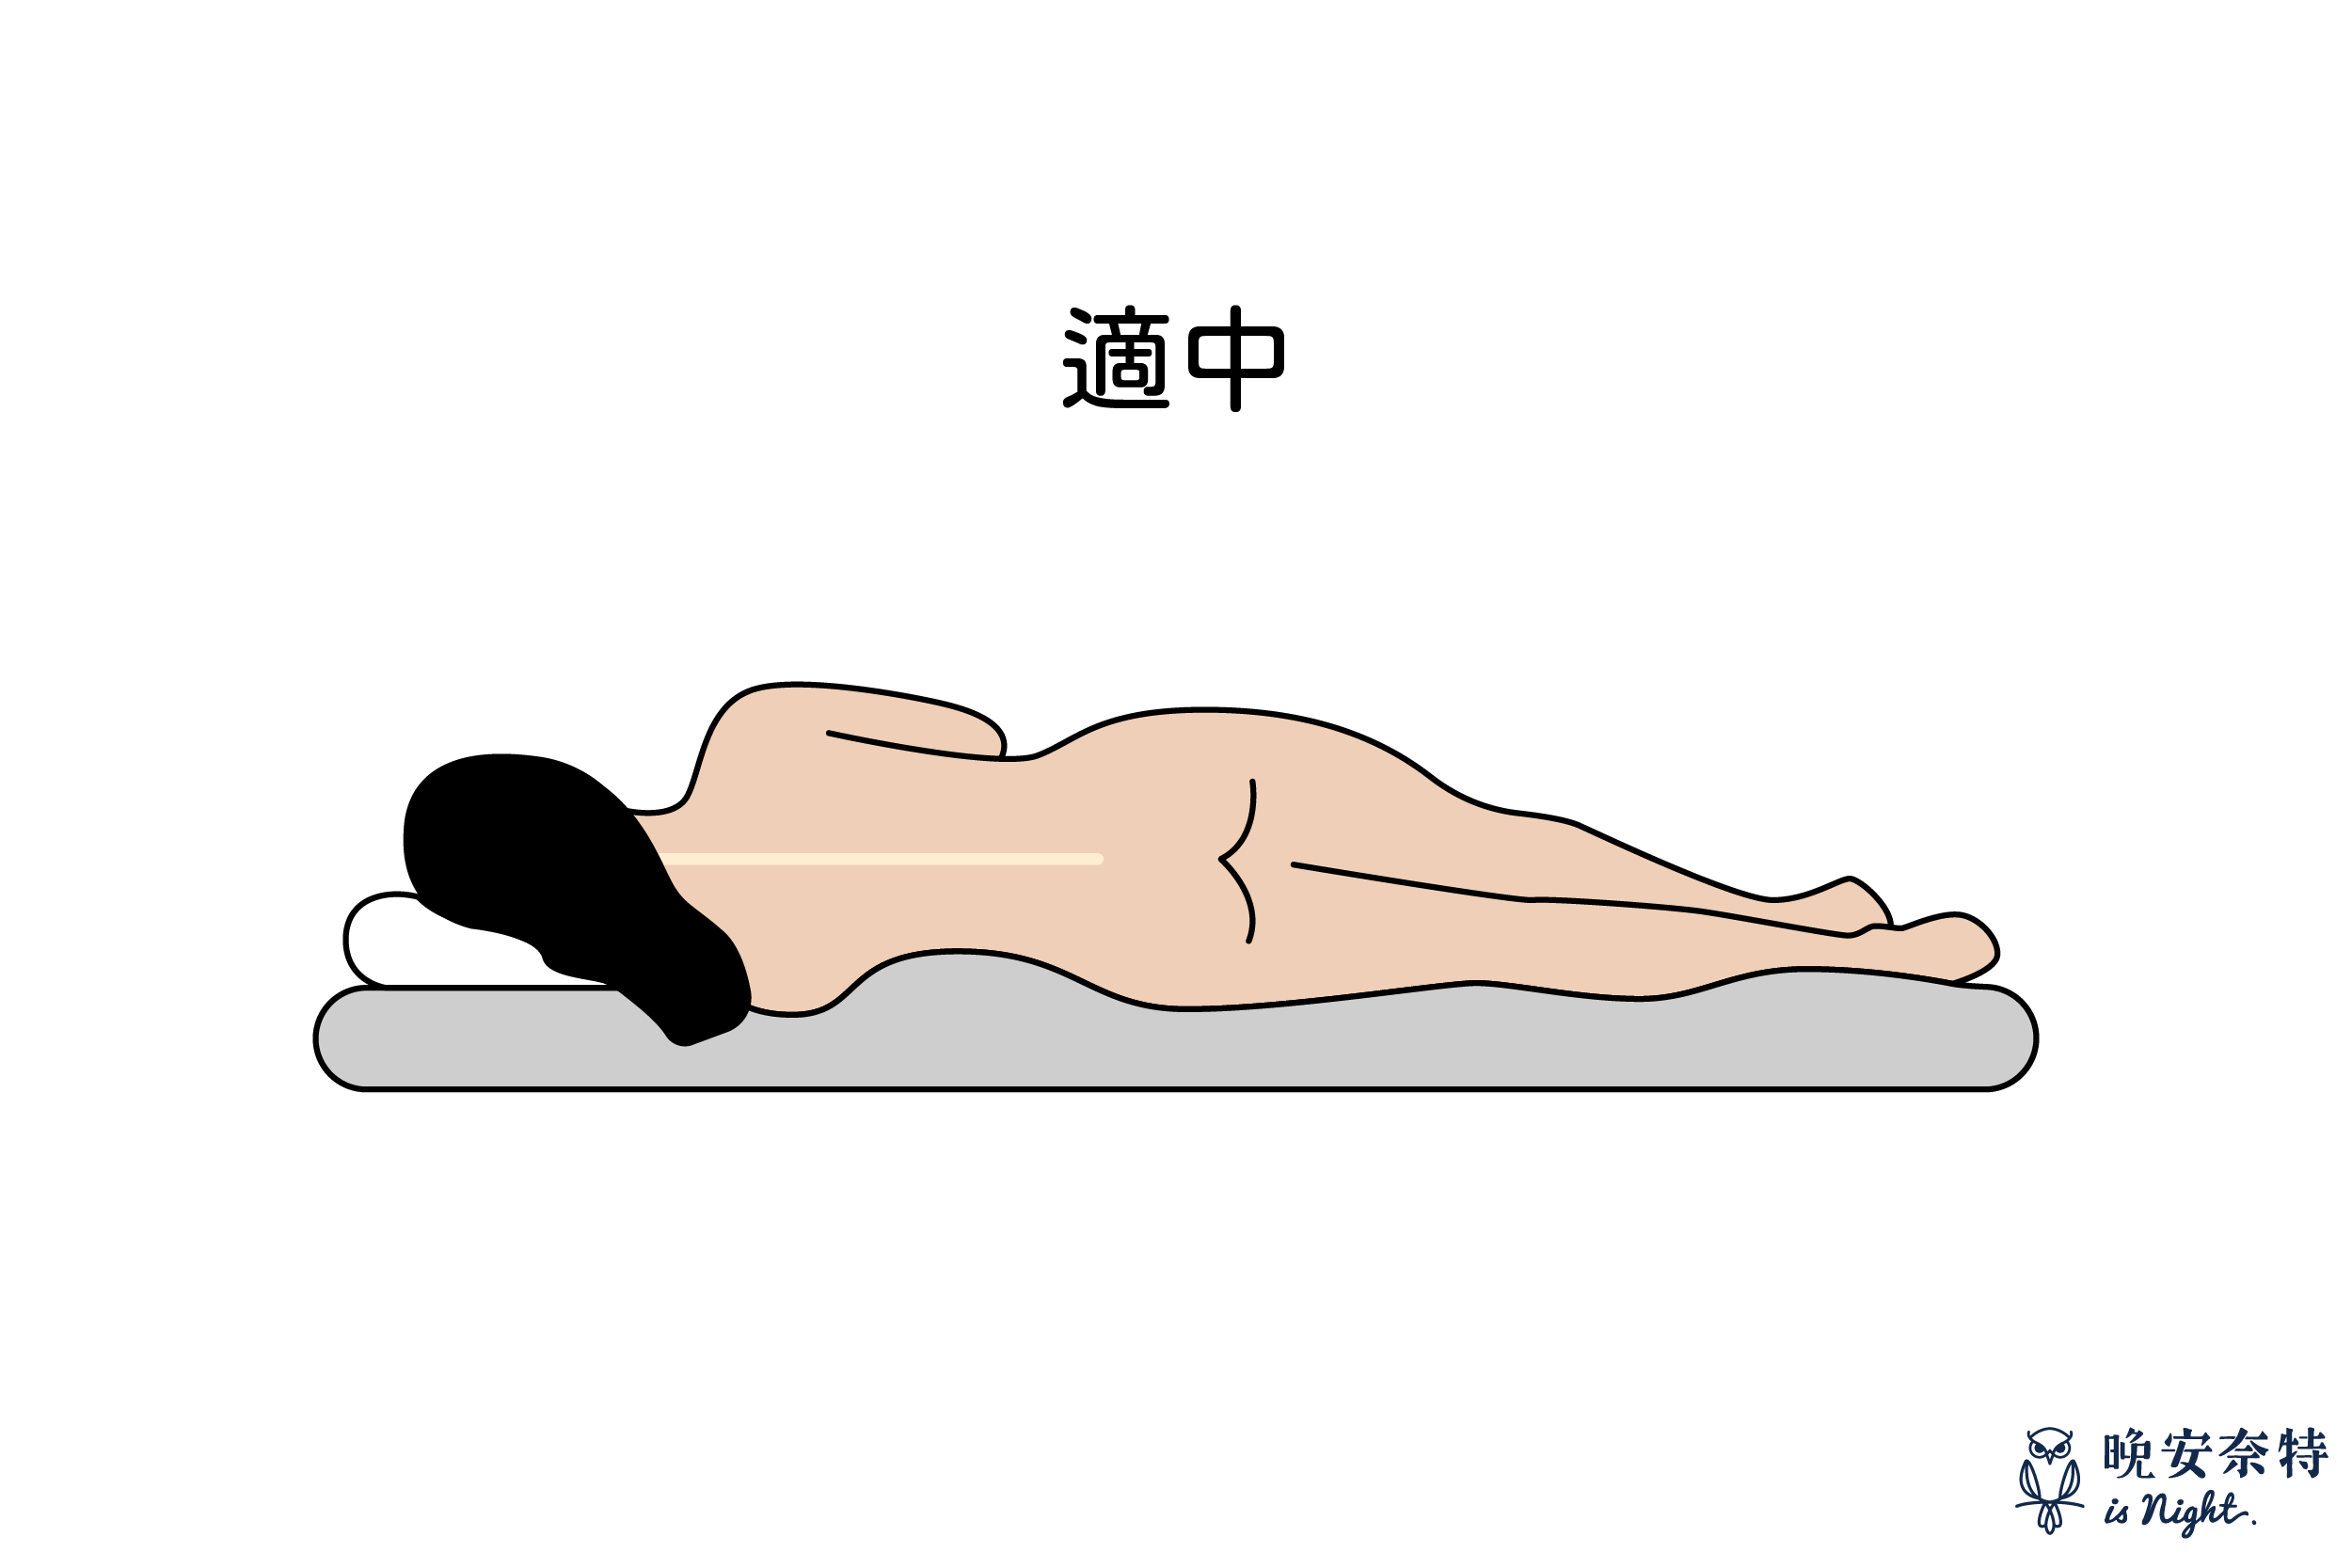 床墊軟硬度：軟硬適中的床墊自然貼合人體曲線，既舒適又能提供人體完整支撐。